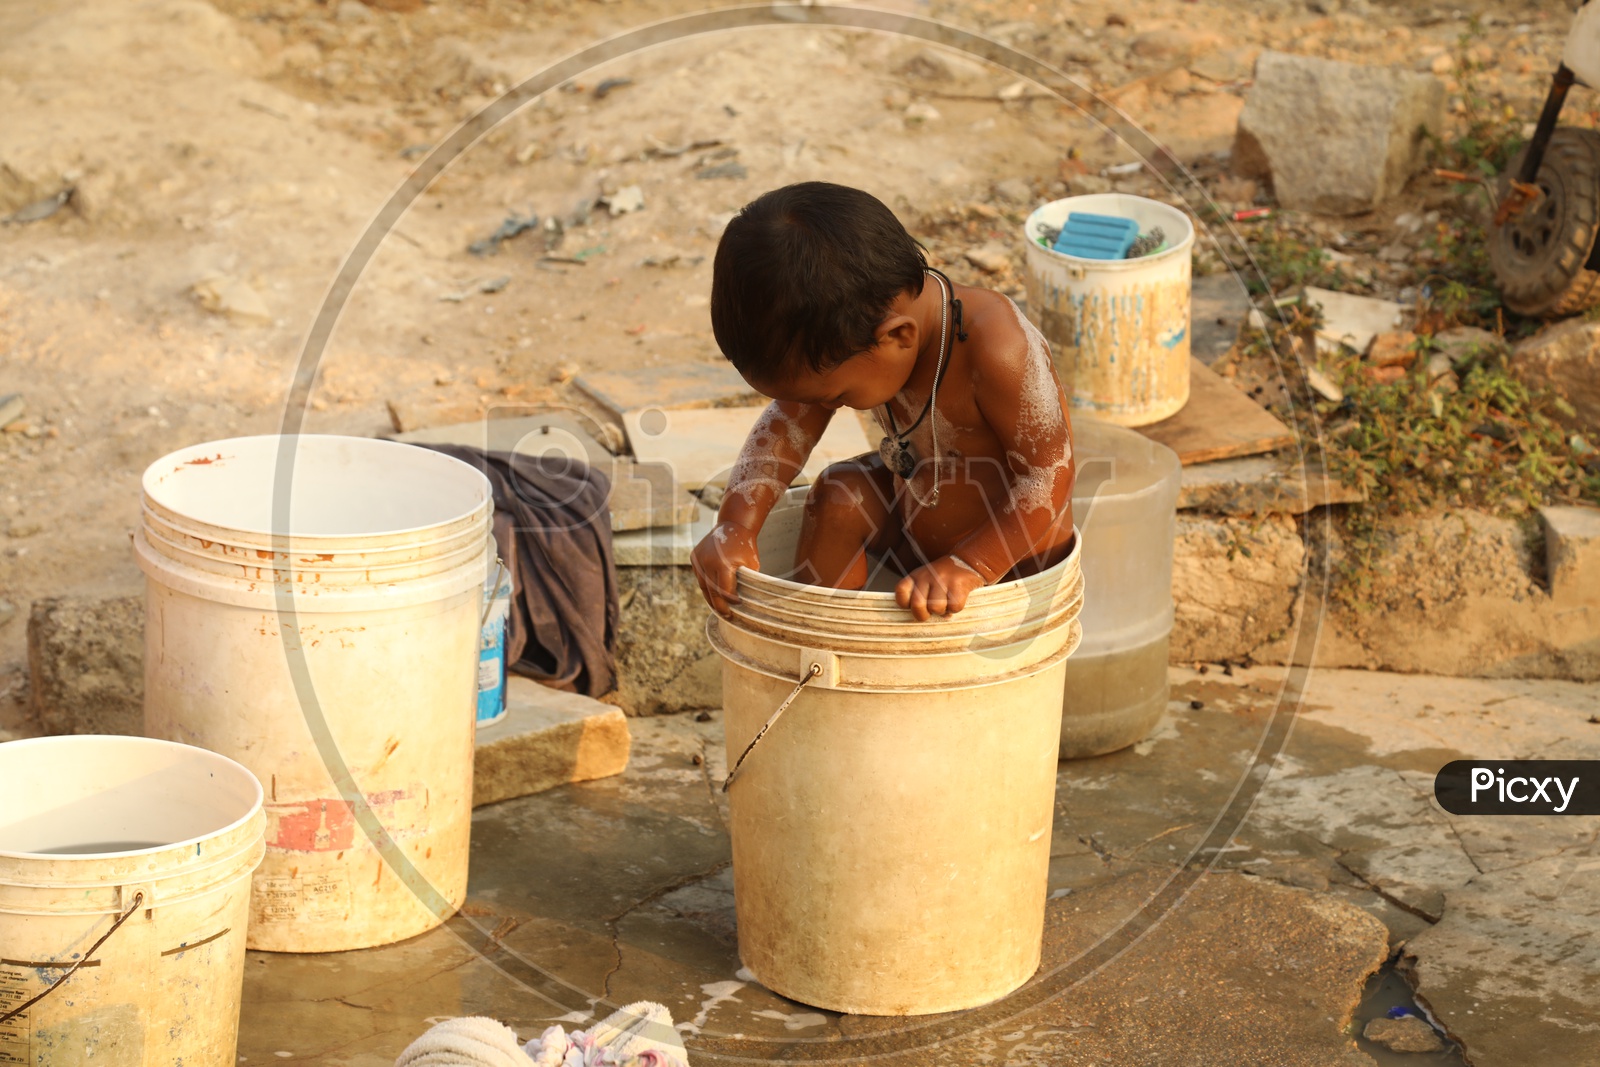 A Child taking bath in a bucket